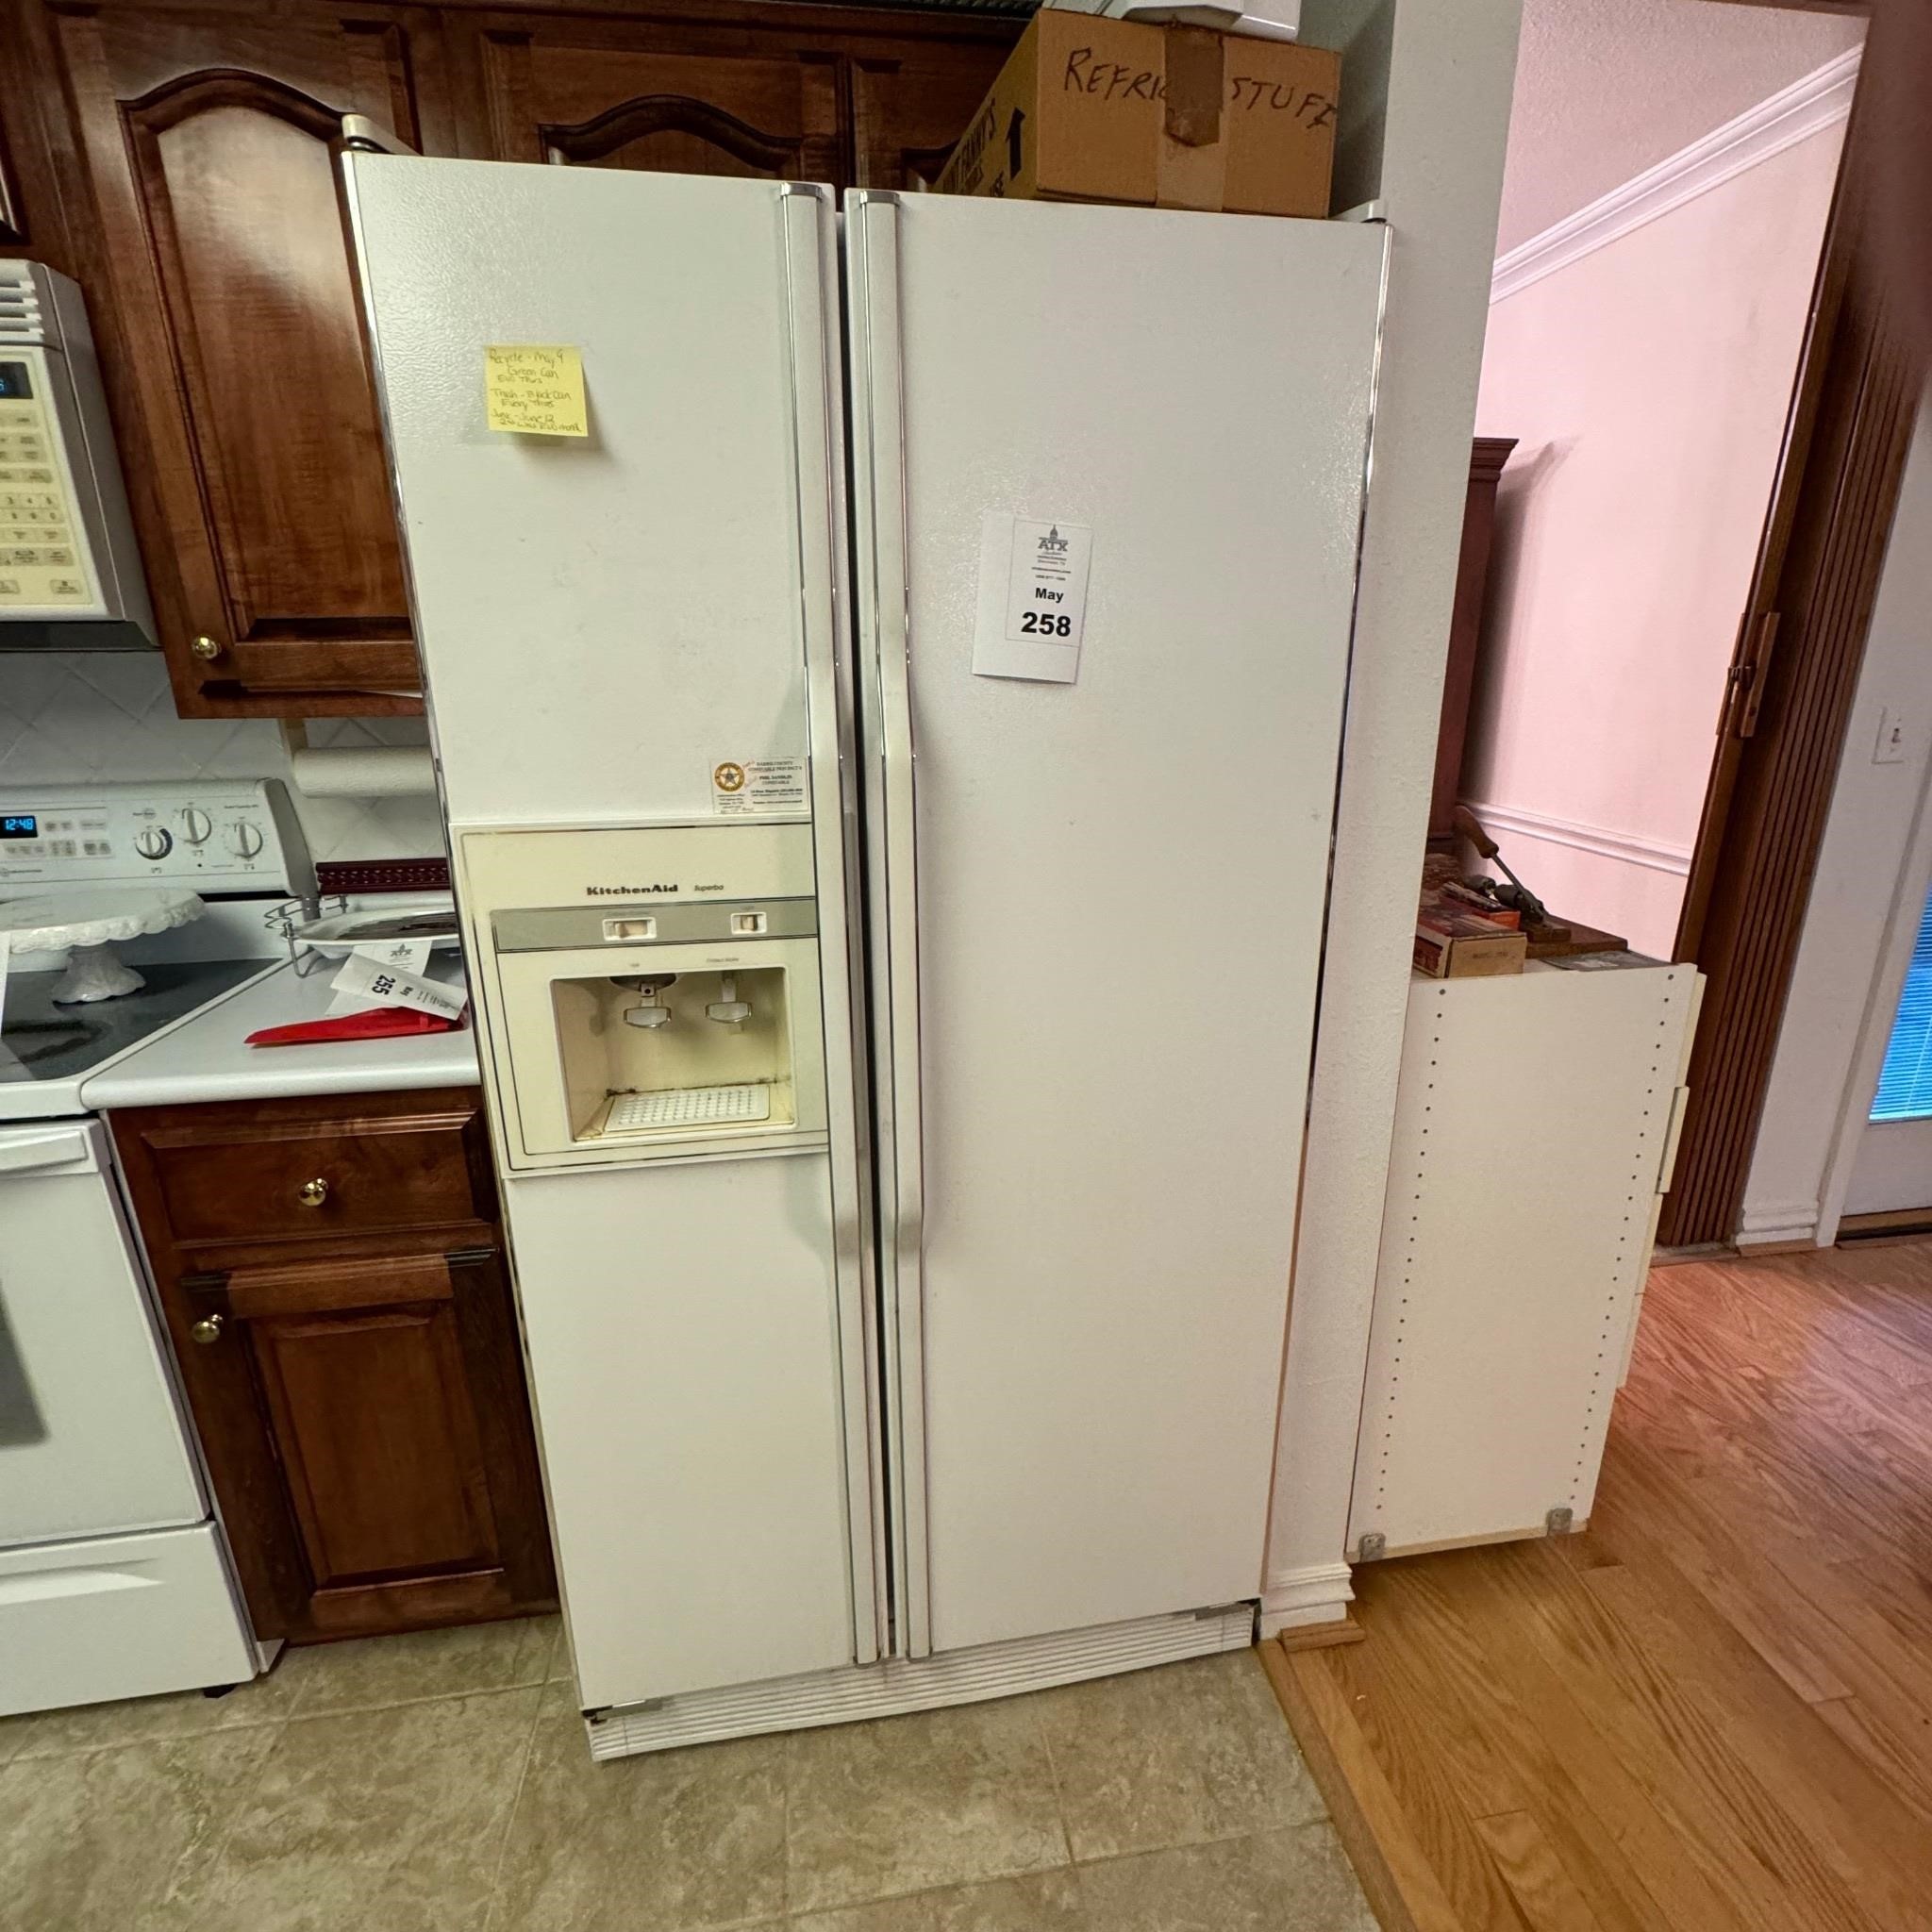 KitchenAid Refrigerator. In working order.